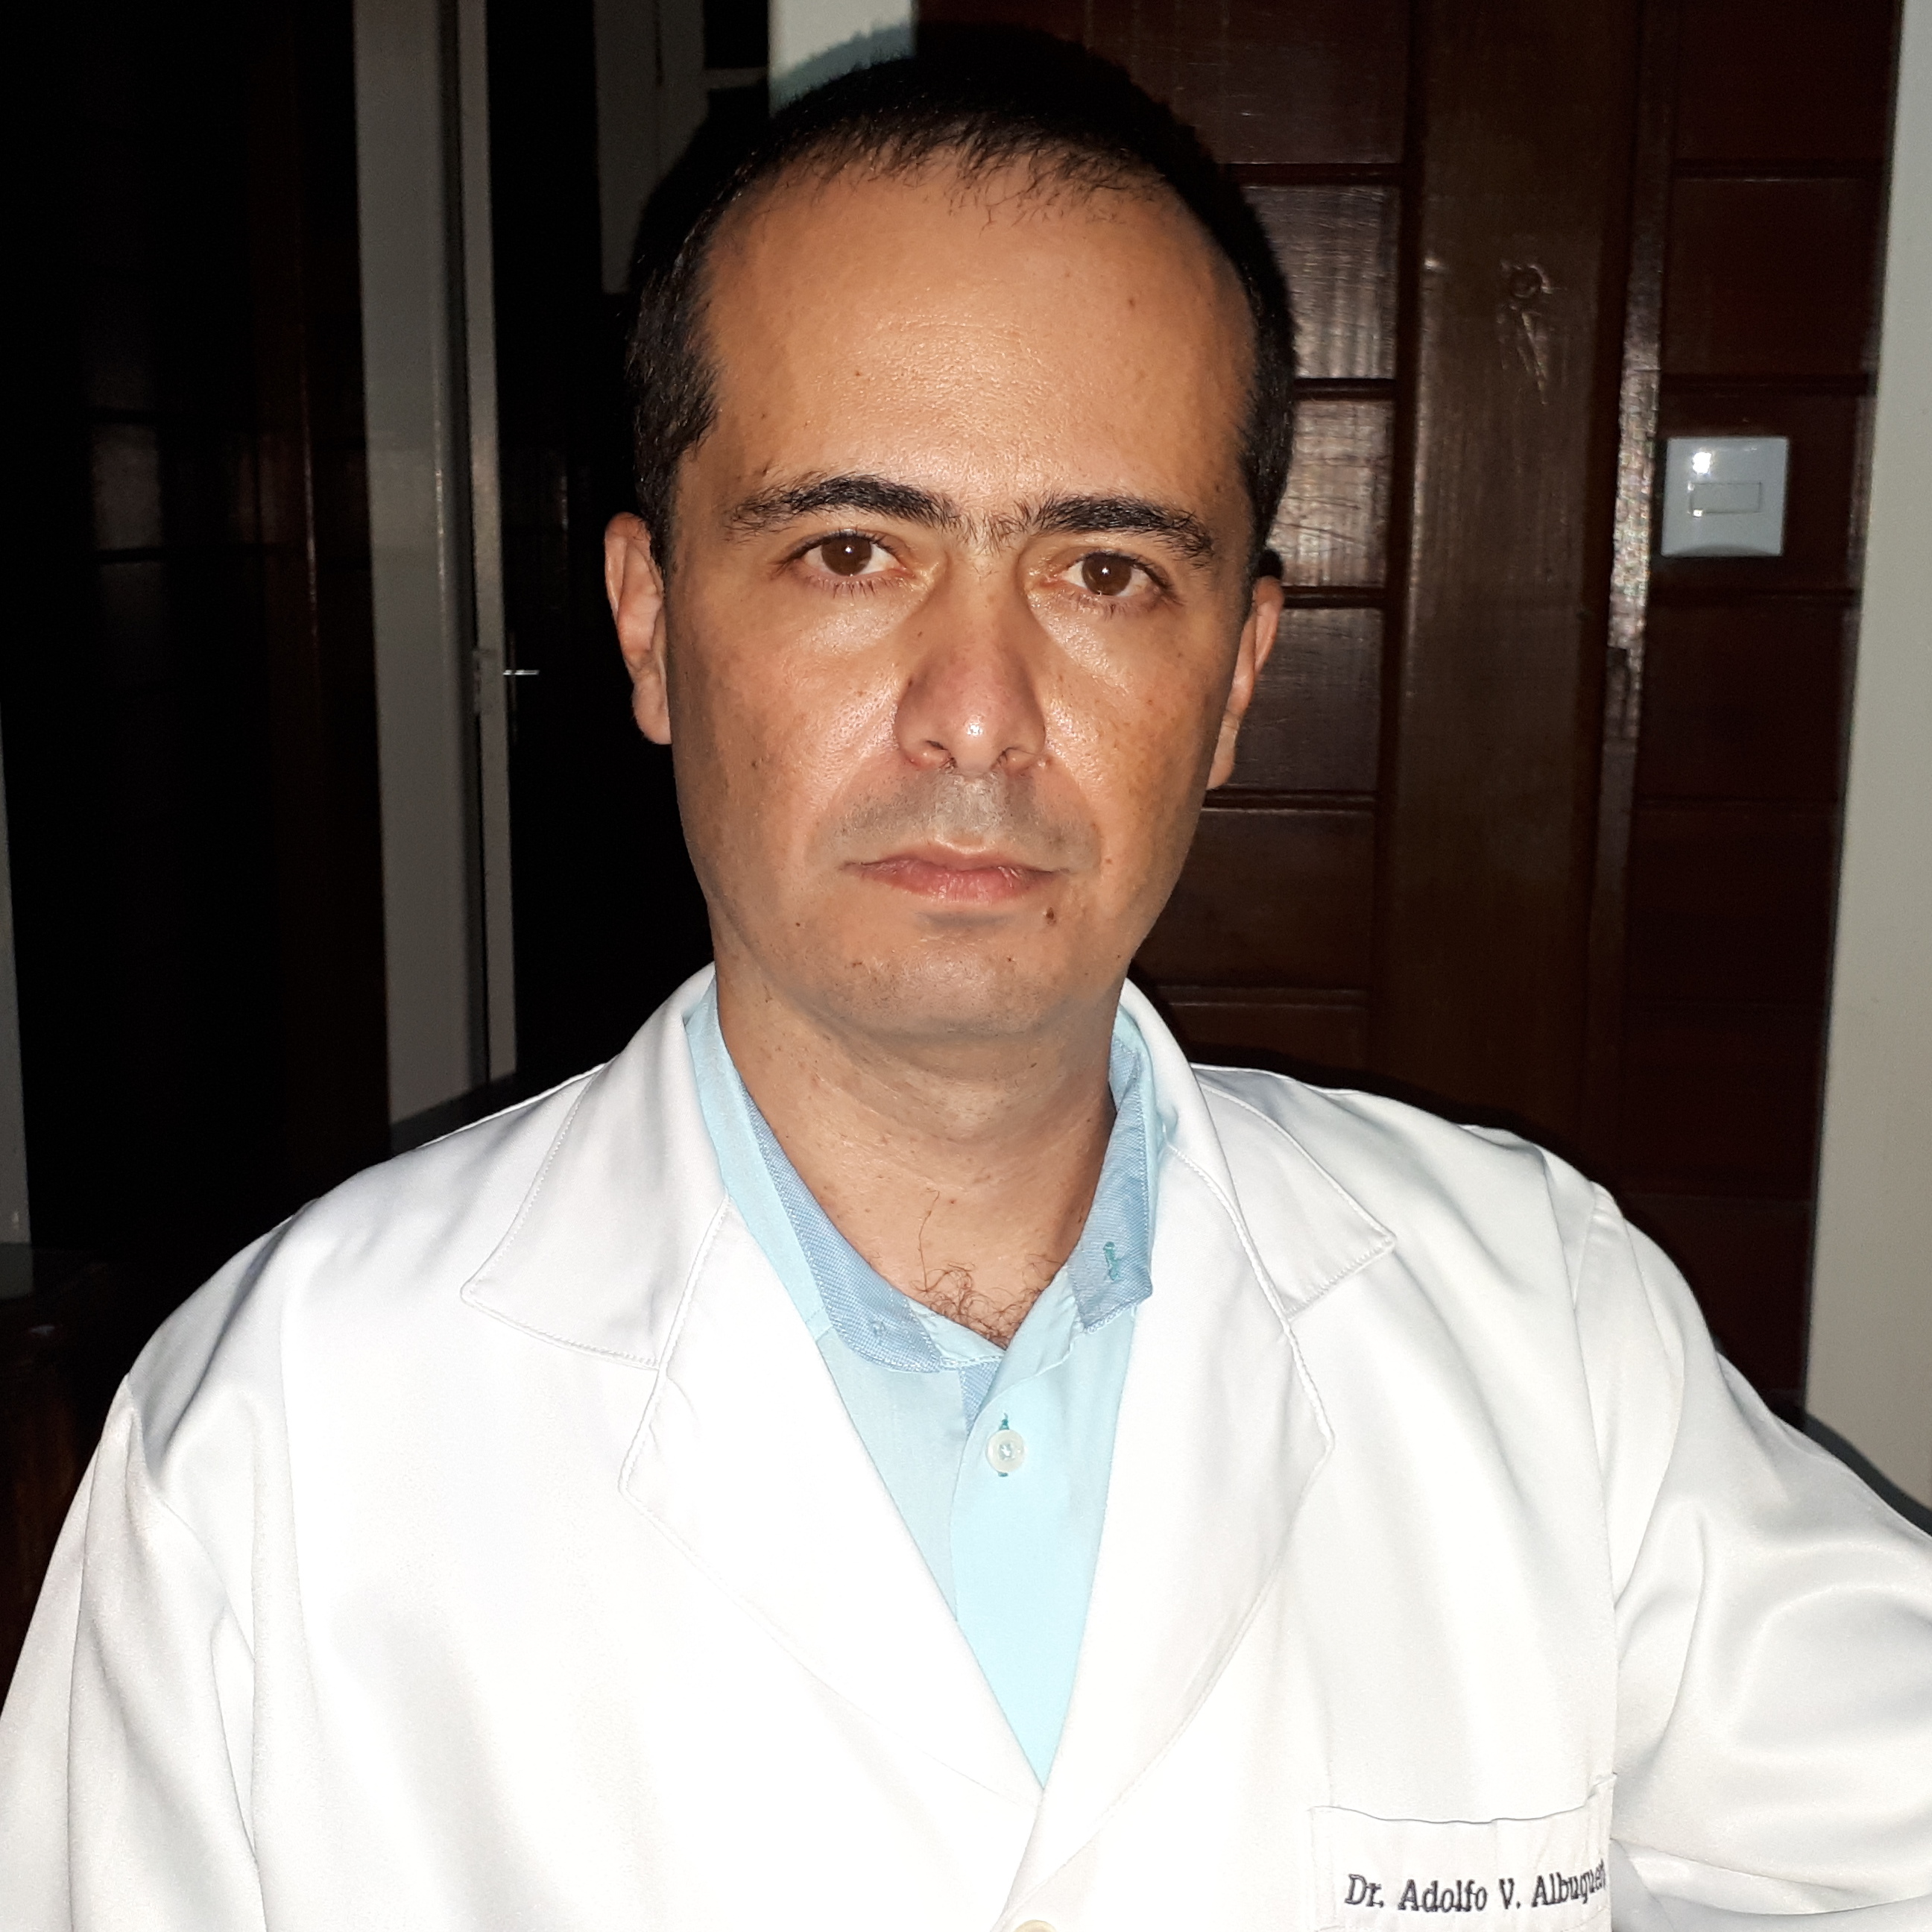 Dr. Adolfo Vasconcelos de Albuquerque